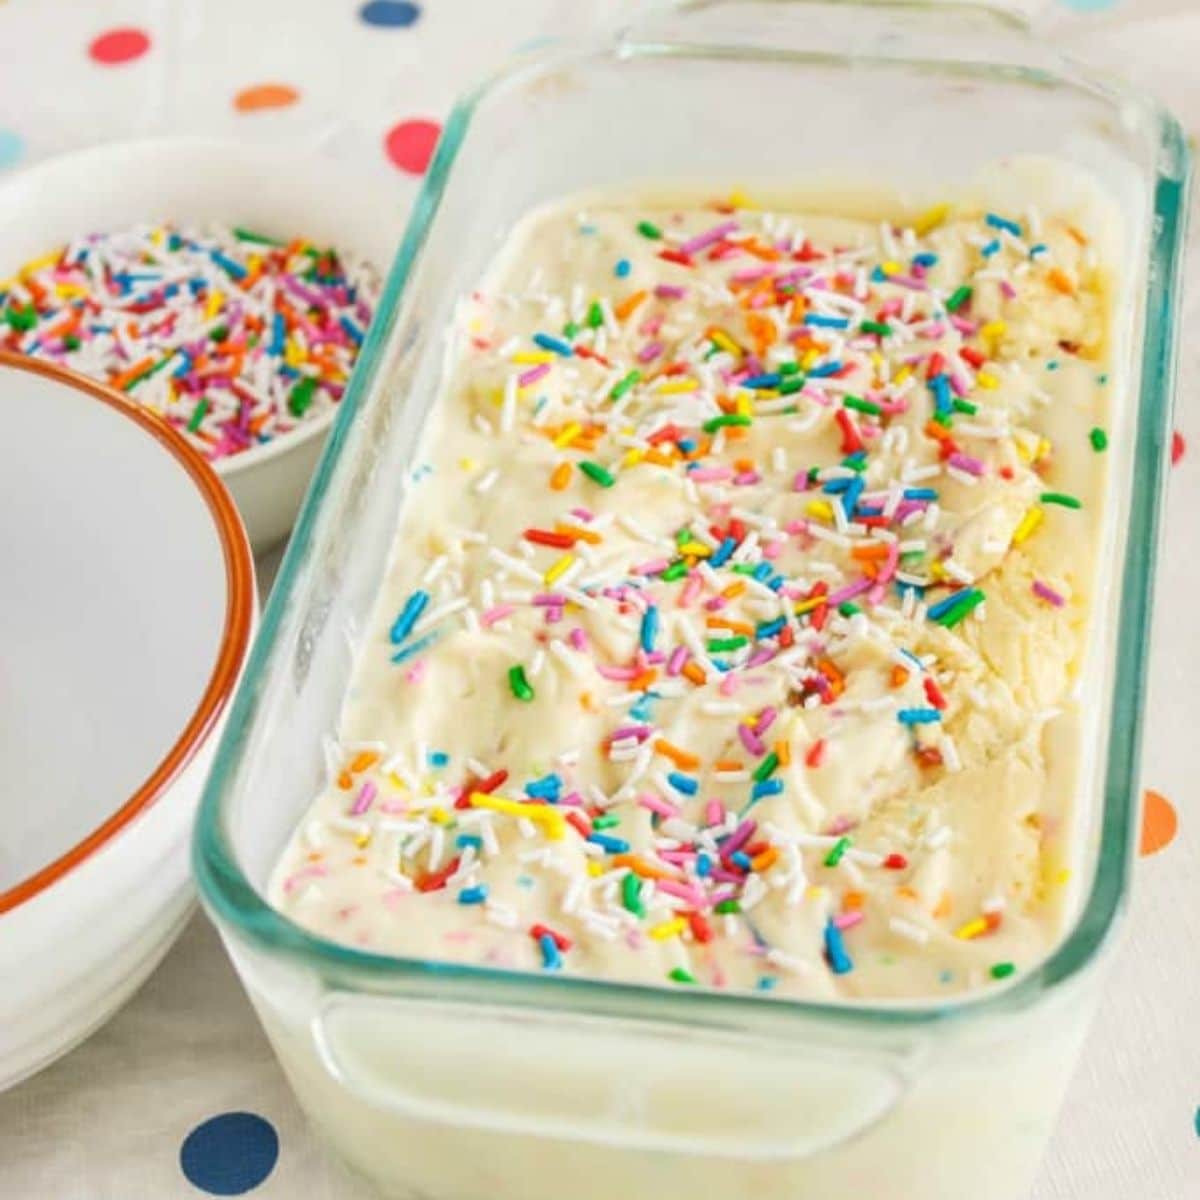 Homemade Birthday Cake Ice Cream - The Cookie Writer